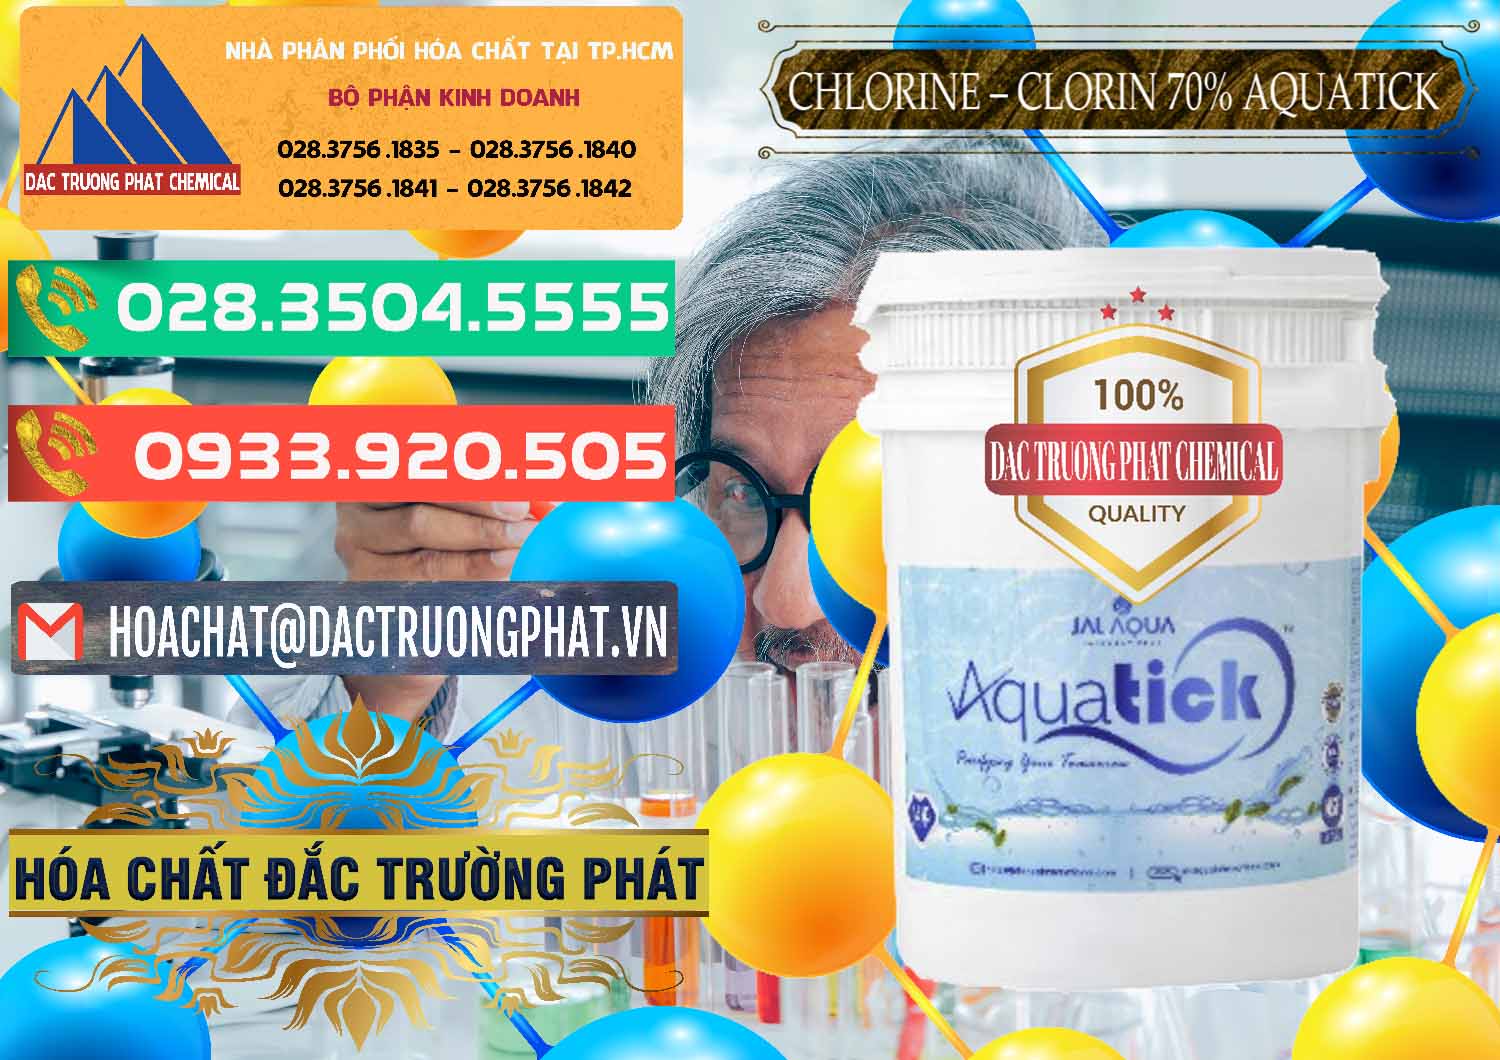 Cty chuyên cung cấp ( bán ) Chlorine – Clorin 70% Aquatick Thùng Cao Jal Aqua Ấn Độ India - 0237 - Đơn vị chuyên nhập khẩu và cung cấp hóa chất tại TP.HCM - congtyhoachat.com.vn